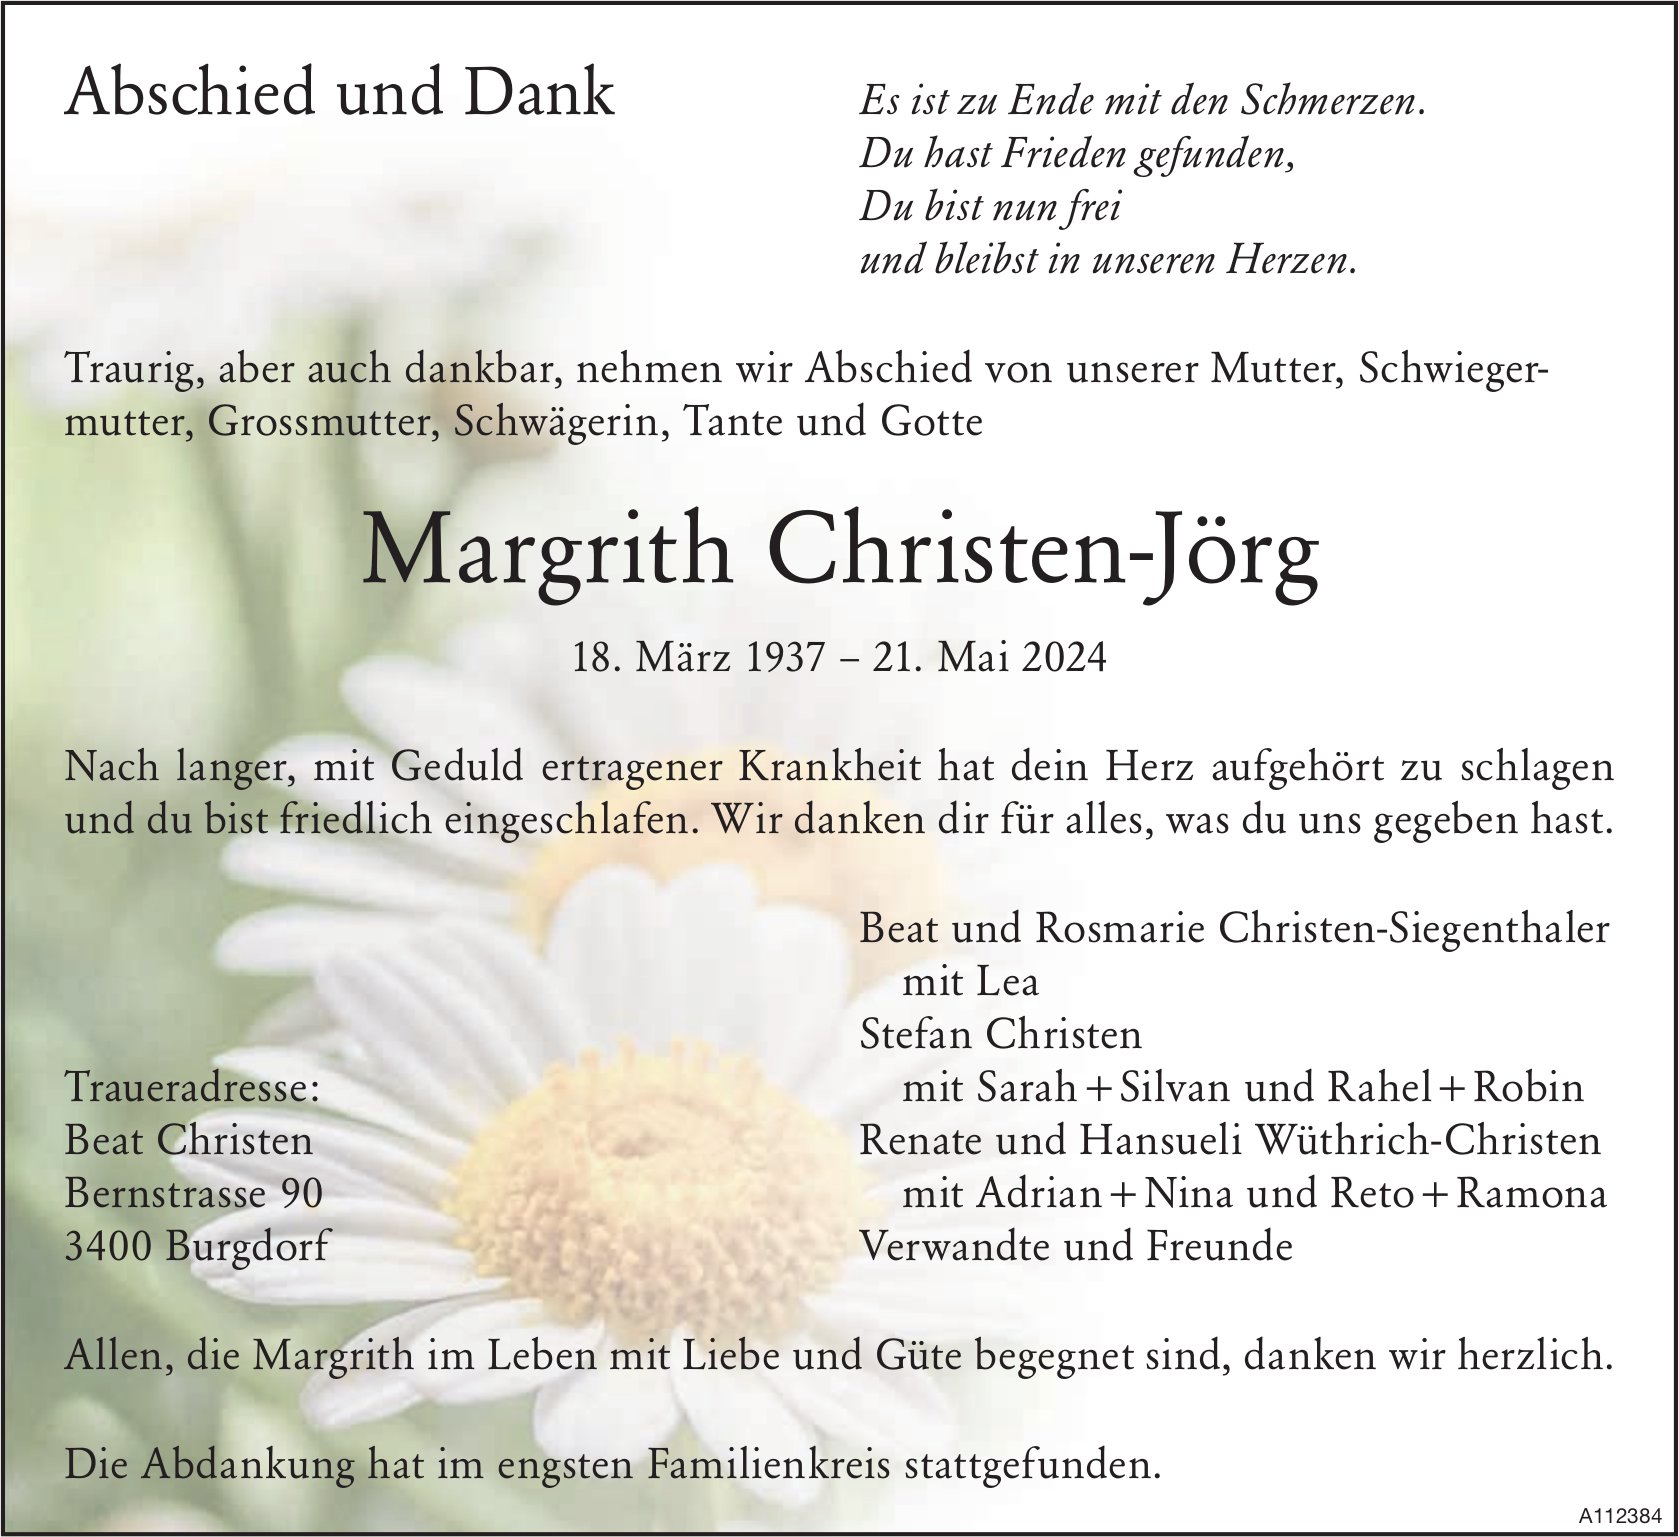 Margrith Christen-Jörg, im Juni 2024 / TA + DS